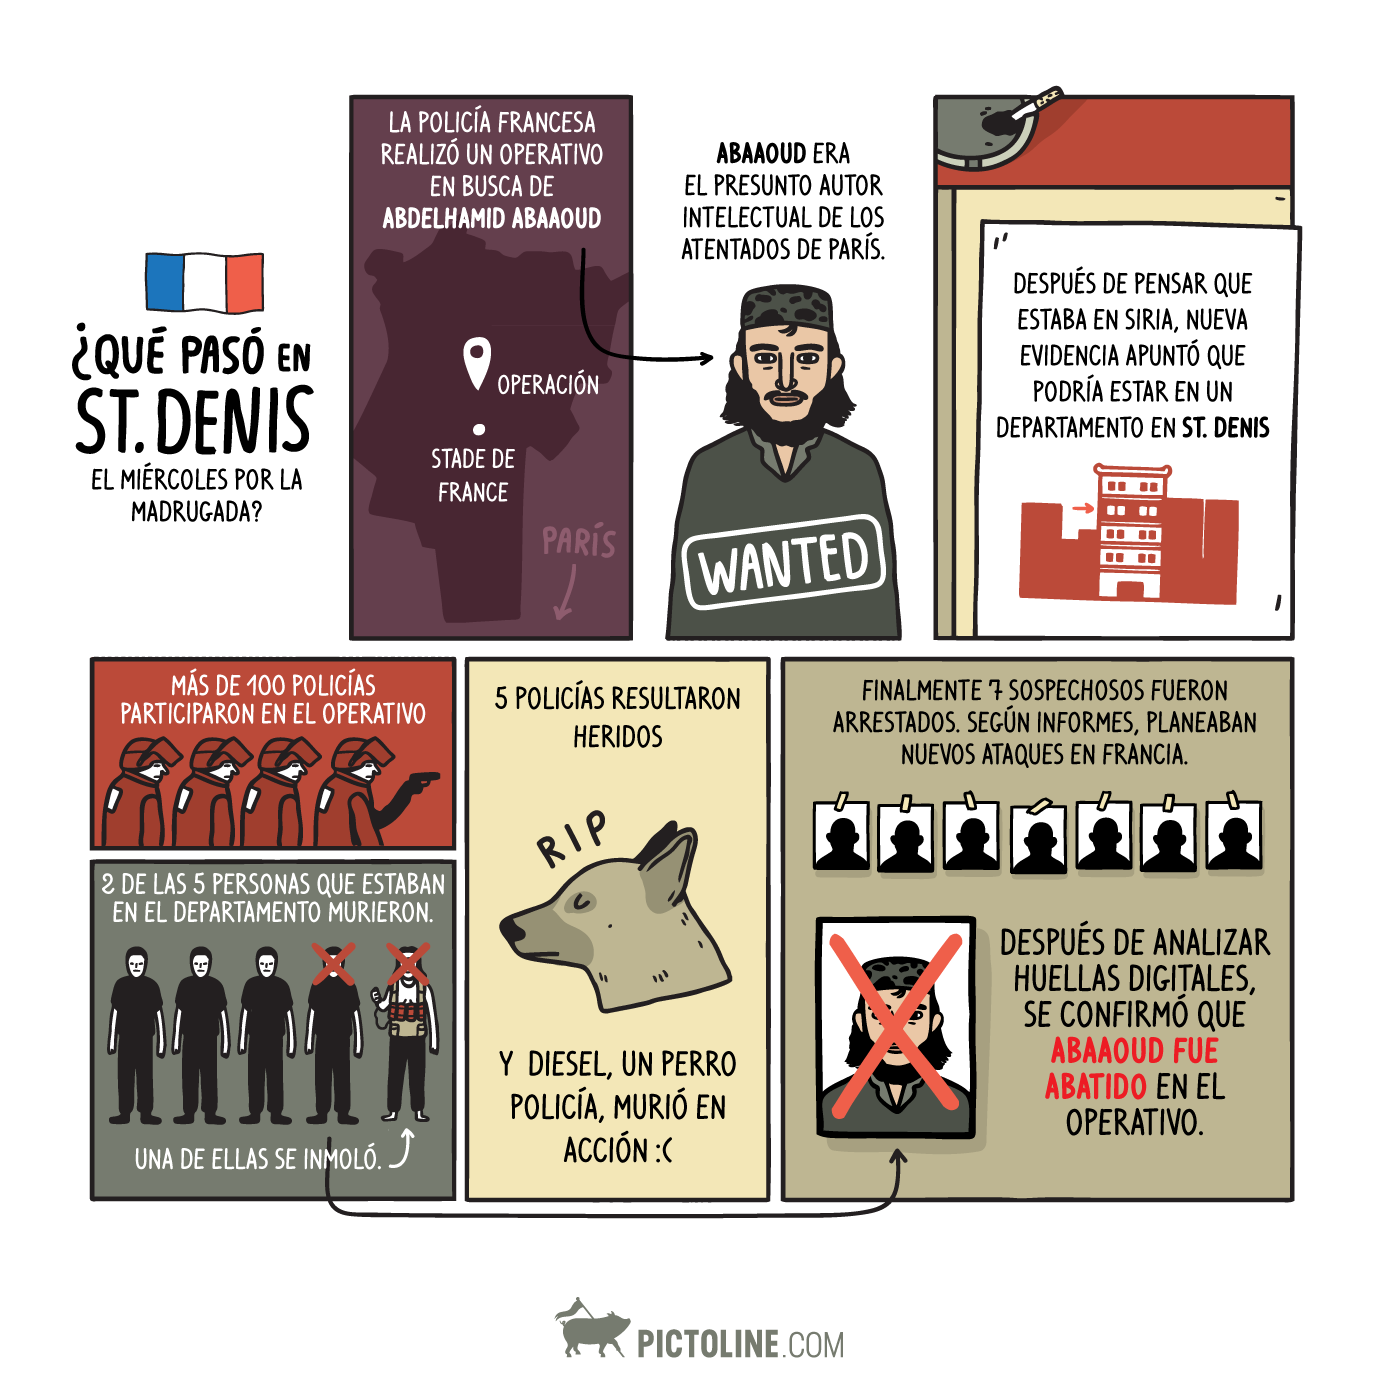 ¿Qué pasó en Saint-Denis?